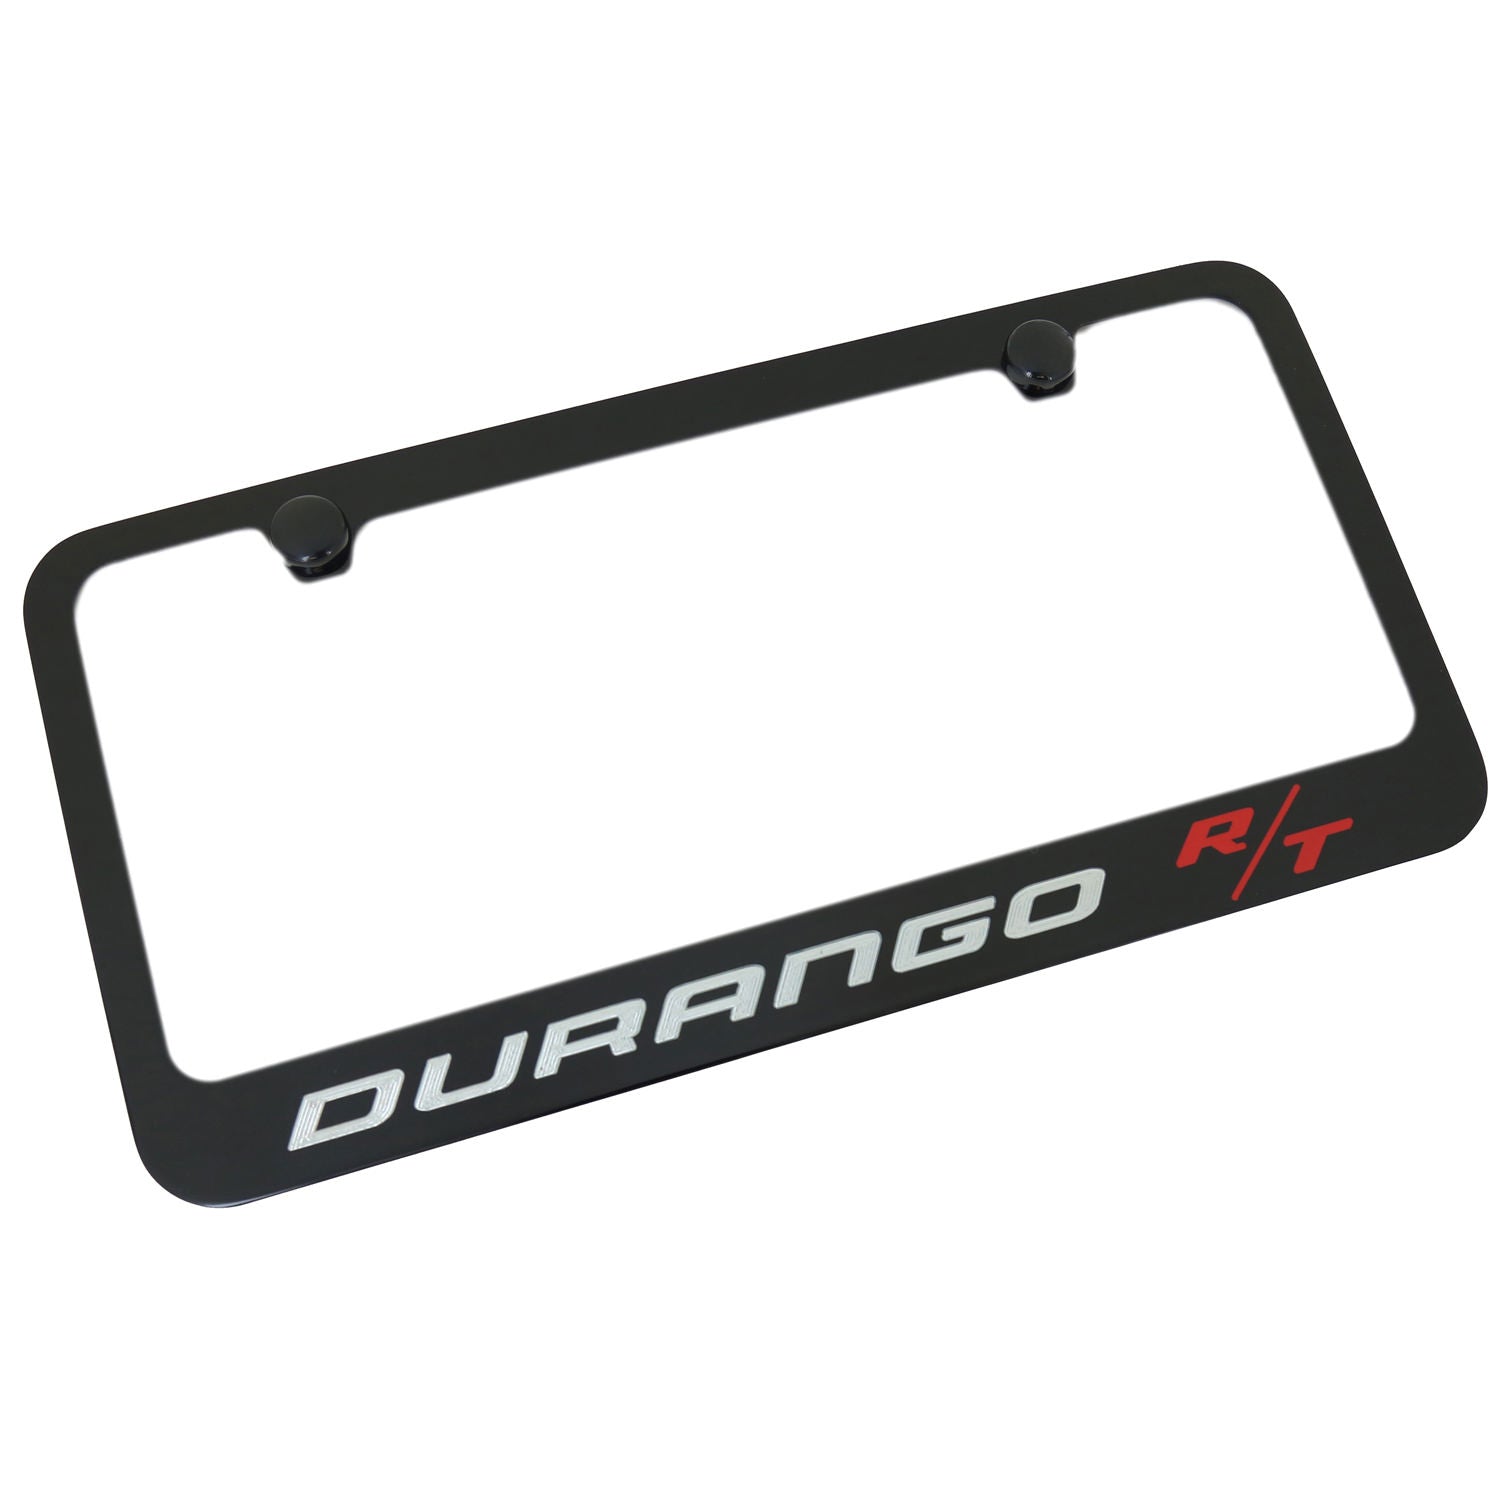 Dodge Durango RT Name License Plate Frame (Black) - Custom Werks